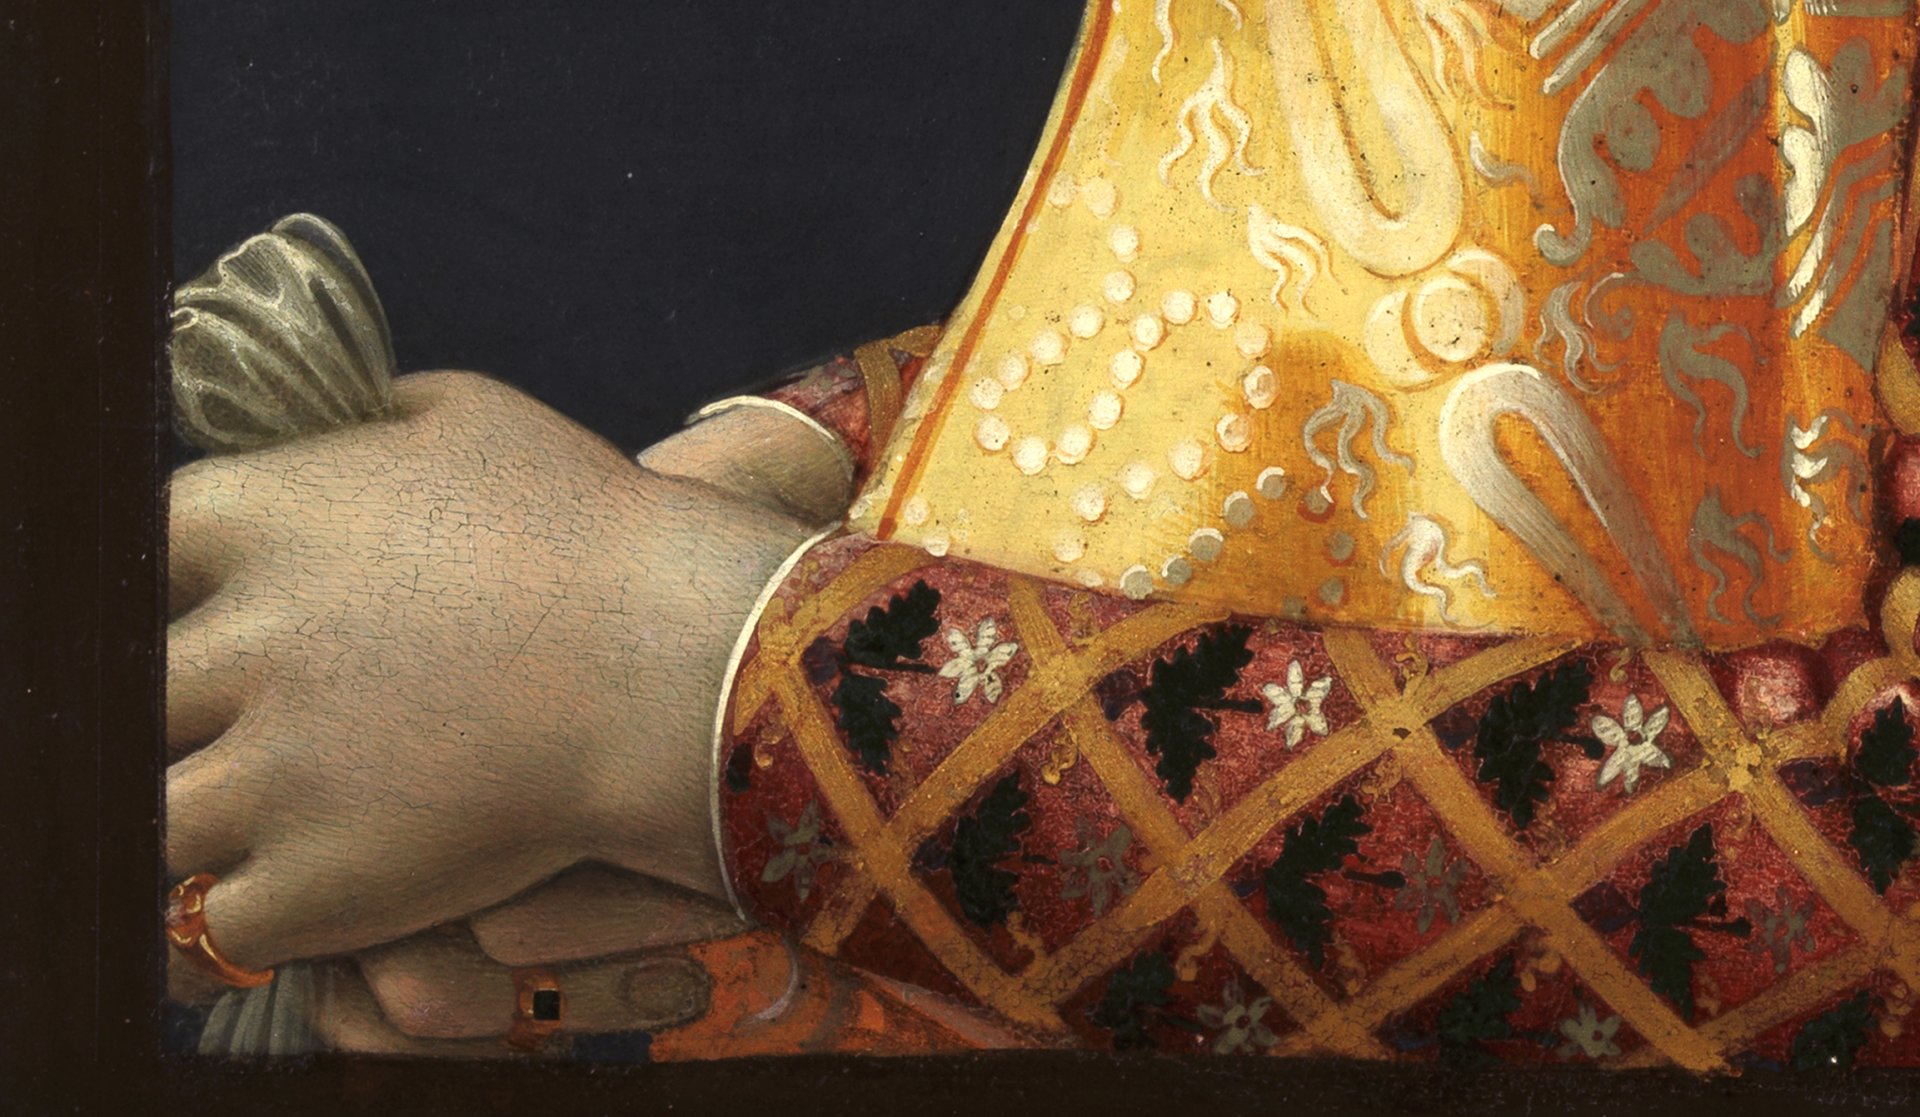 Detalle de las manos de la obra “Retrato de Giovanna Tornabuoni”, de Ghirlandaio